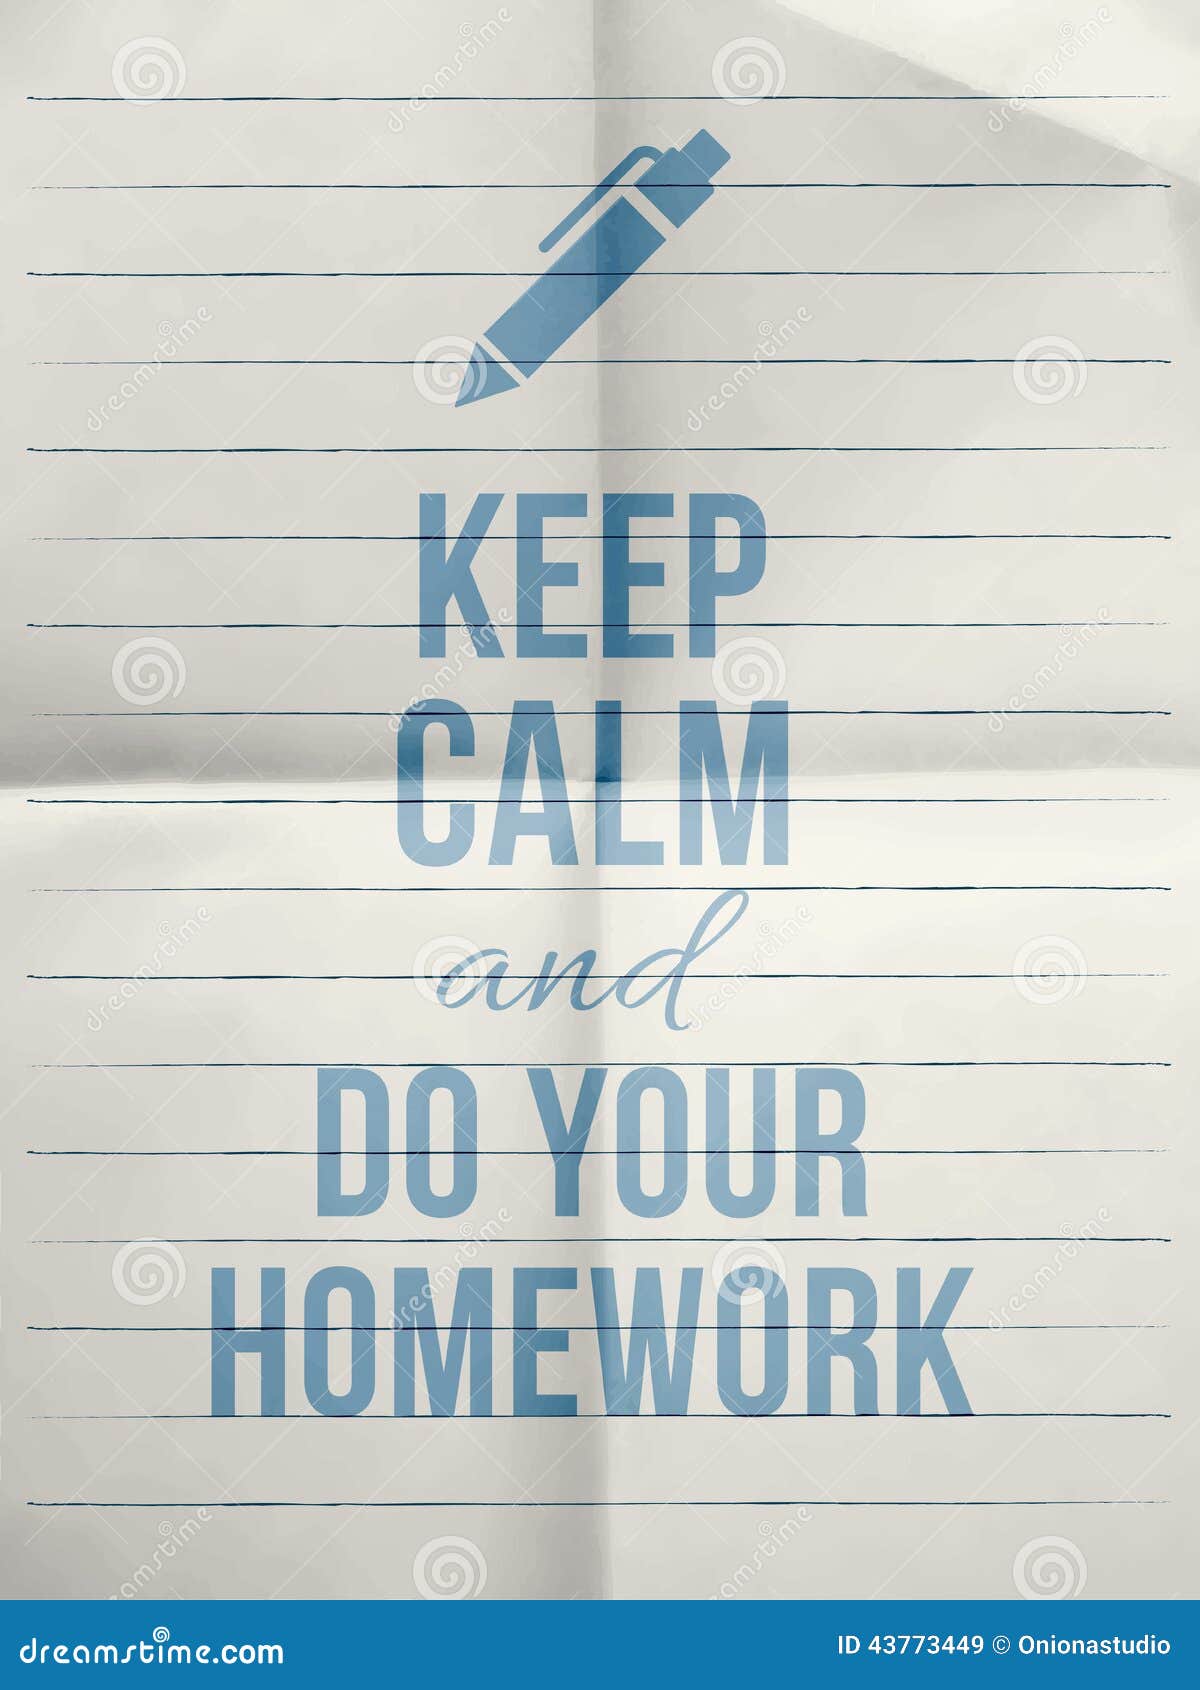 Calm homework